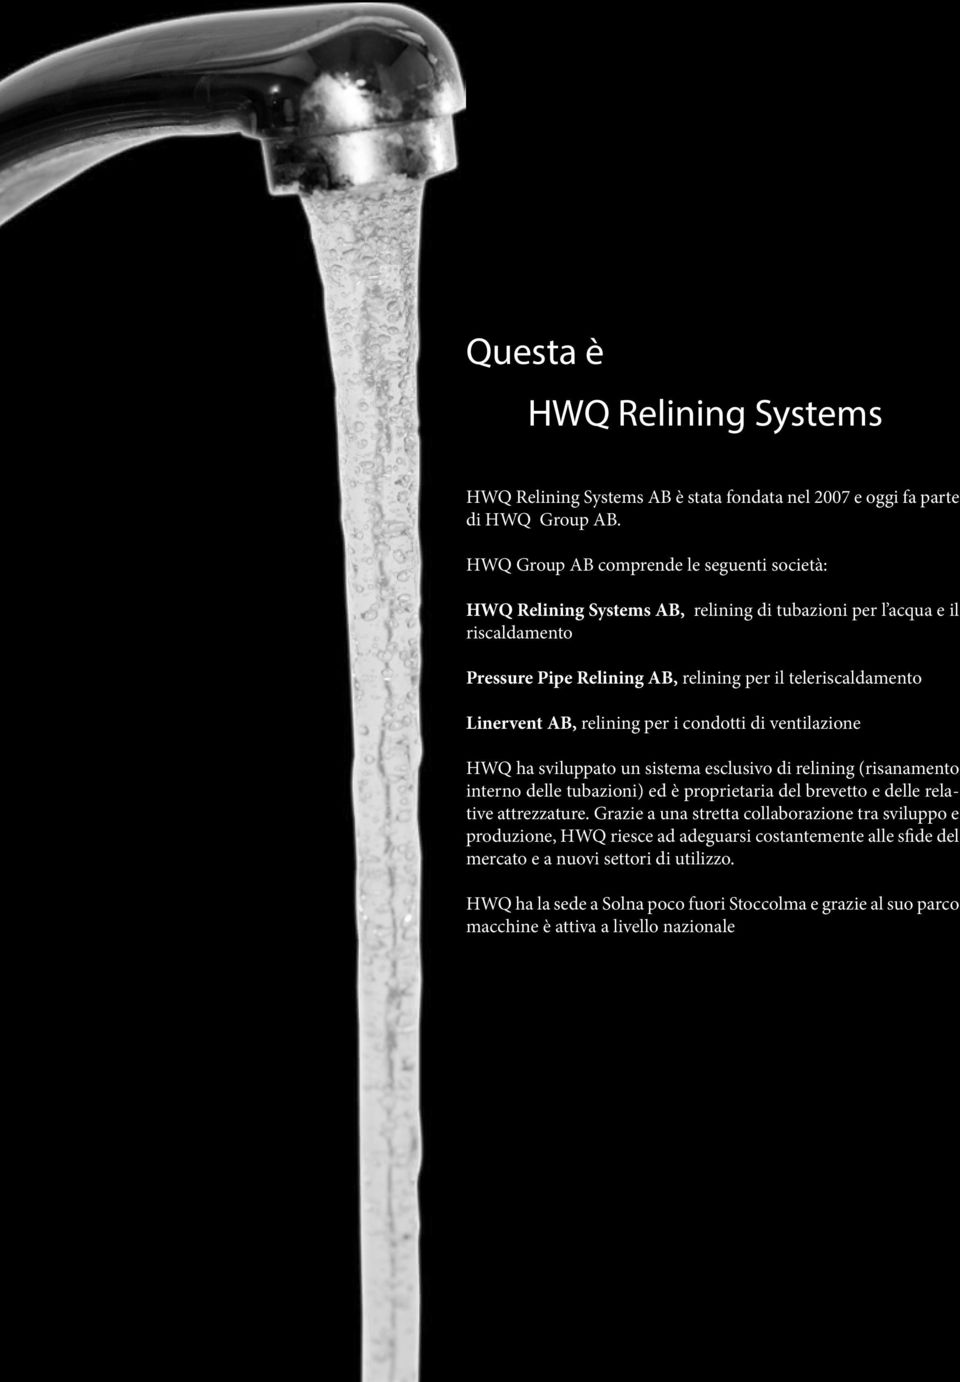 Linervent AB, relining per i condotti di ventilazione HWQ ha sviluppato un sistema esclusivo di relining (risanamento interno delle tubazioni) ed è proprietaria del brevetto e delle